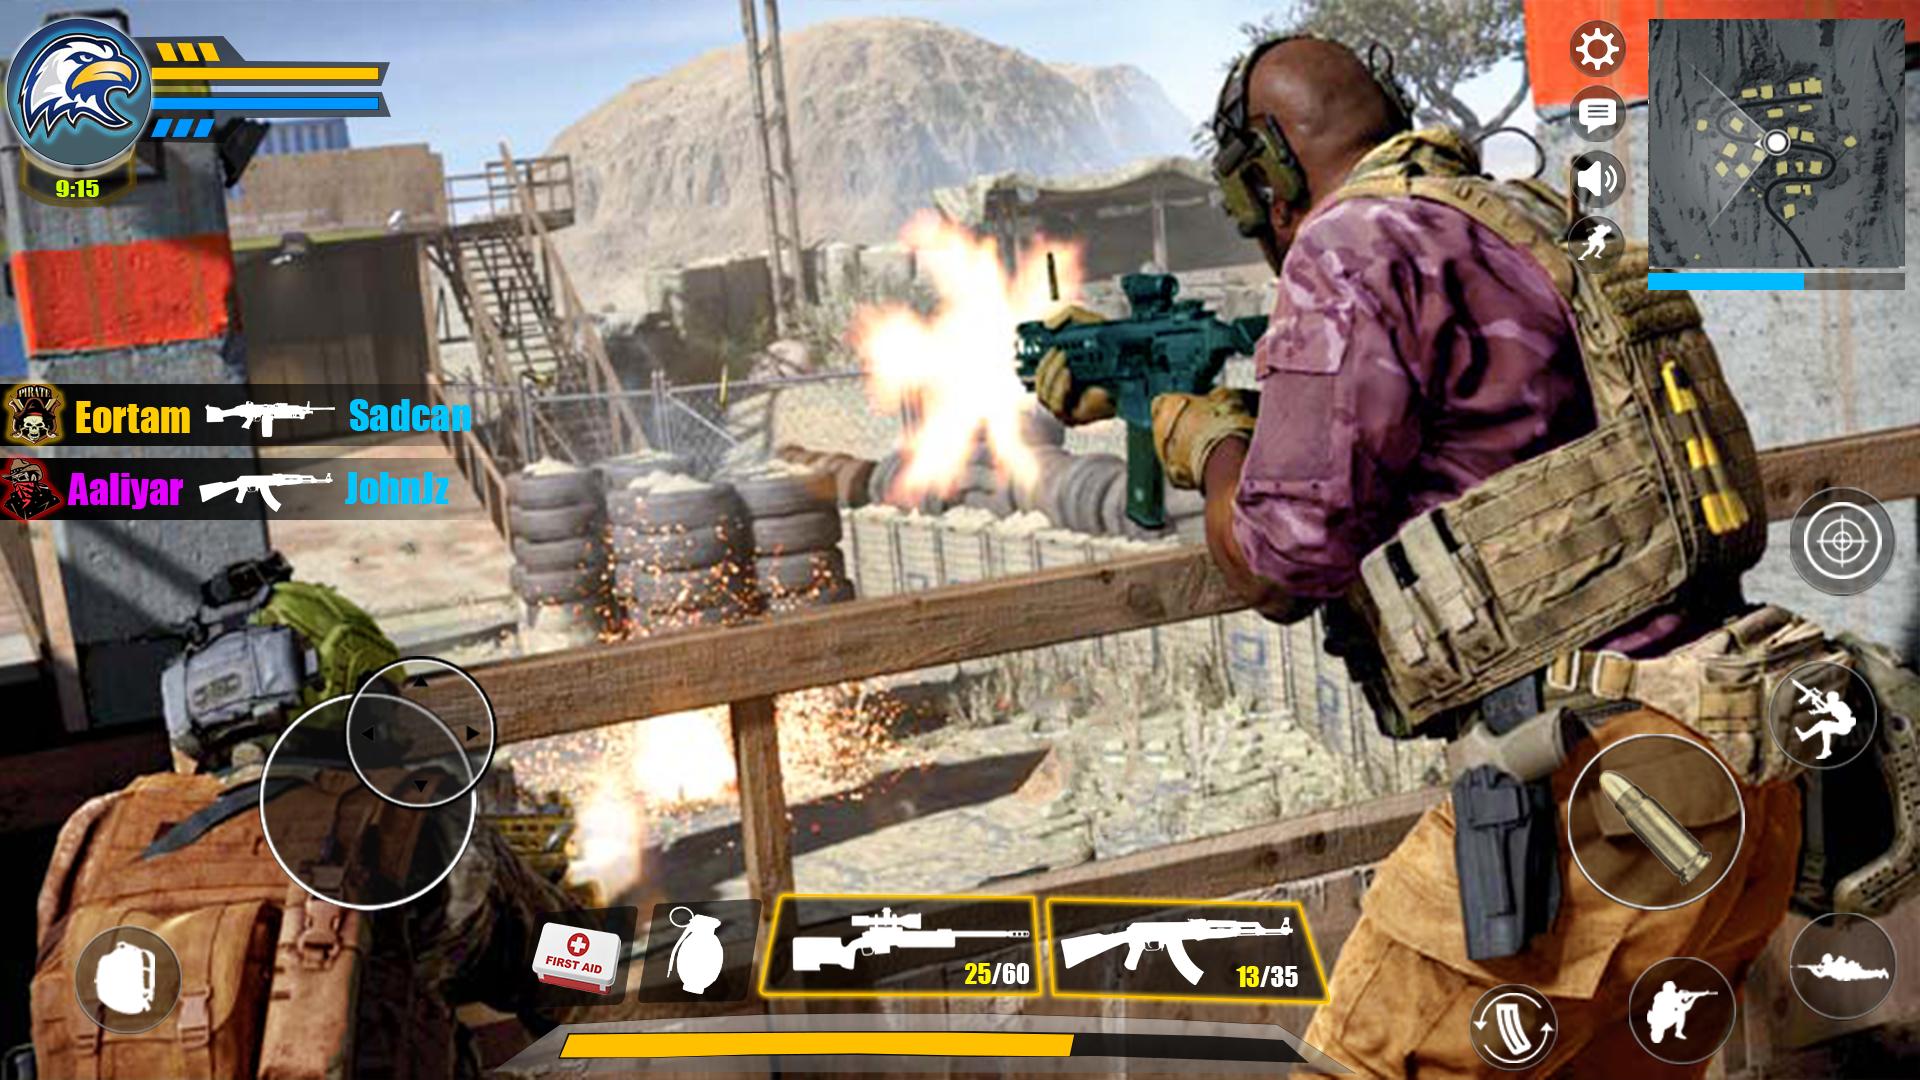 Download do APK de Critical Commando Ops: Free Fire Novos jogos